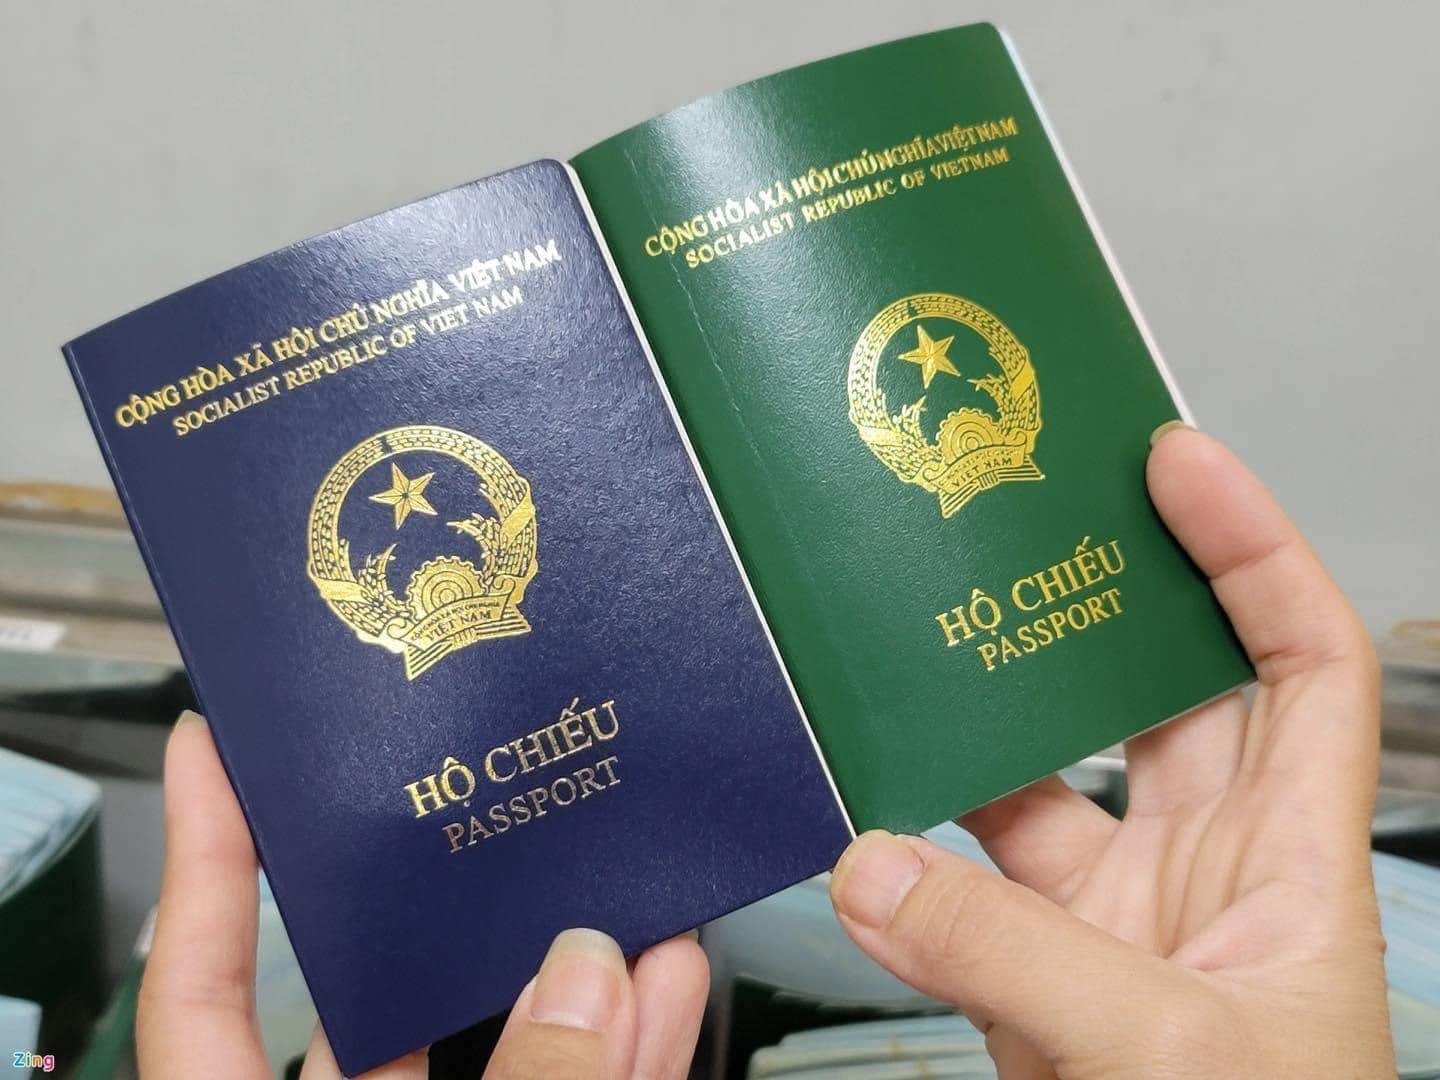 Đổi mẫu hộ chiếu mới - Bạn muốn sử dụng mẫu hộ chiếu mới và tươi trẻ hơn? Hãy cùng xem qua những hình ảnh về những mẫu hộ chiếu mới nhất, được thiết kế với tính thẩm mỹ cao và sự hiện đại, sẽ đem đến cho bạn một phong cách mới lạ.